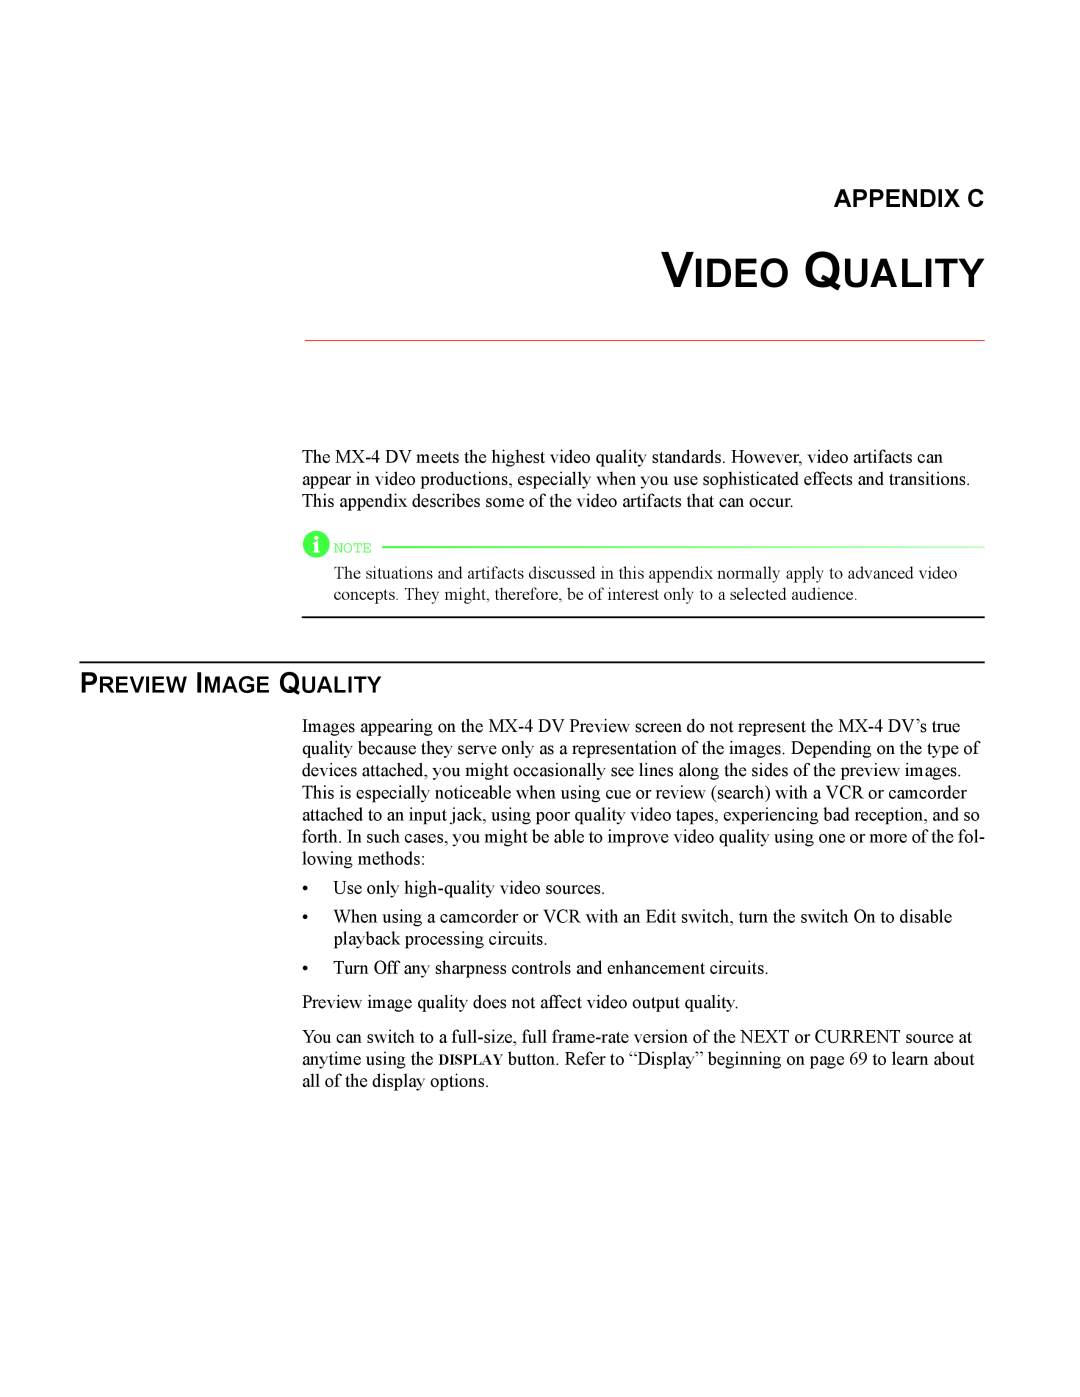 FOCUS Enhancements MX-4DV manual Video Quality, Appendix C, Preview Image Quality 